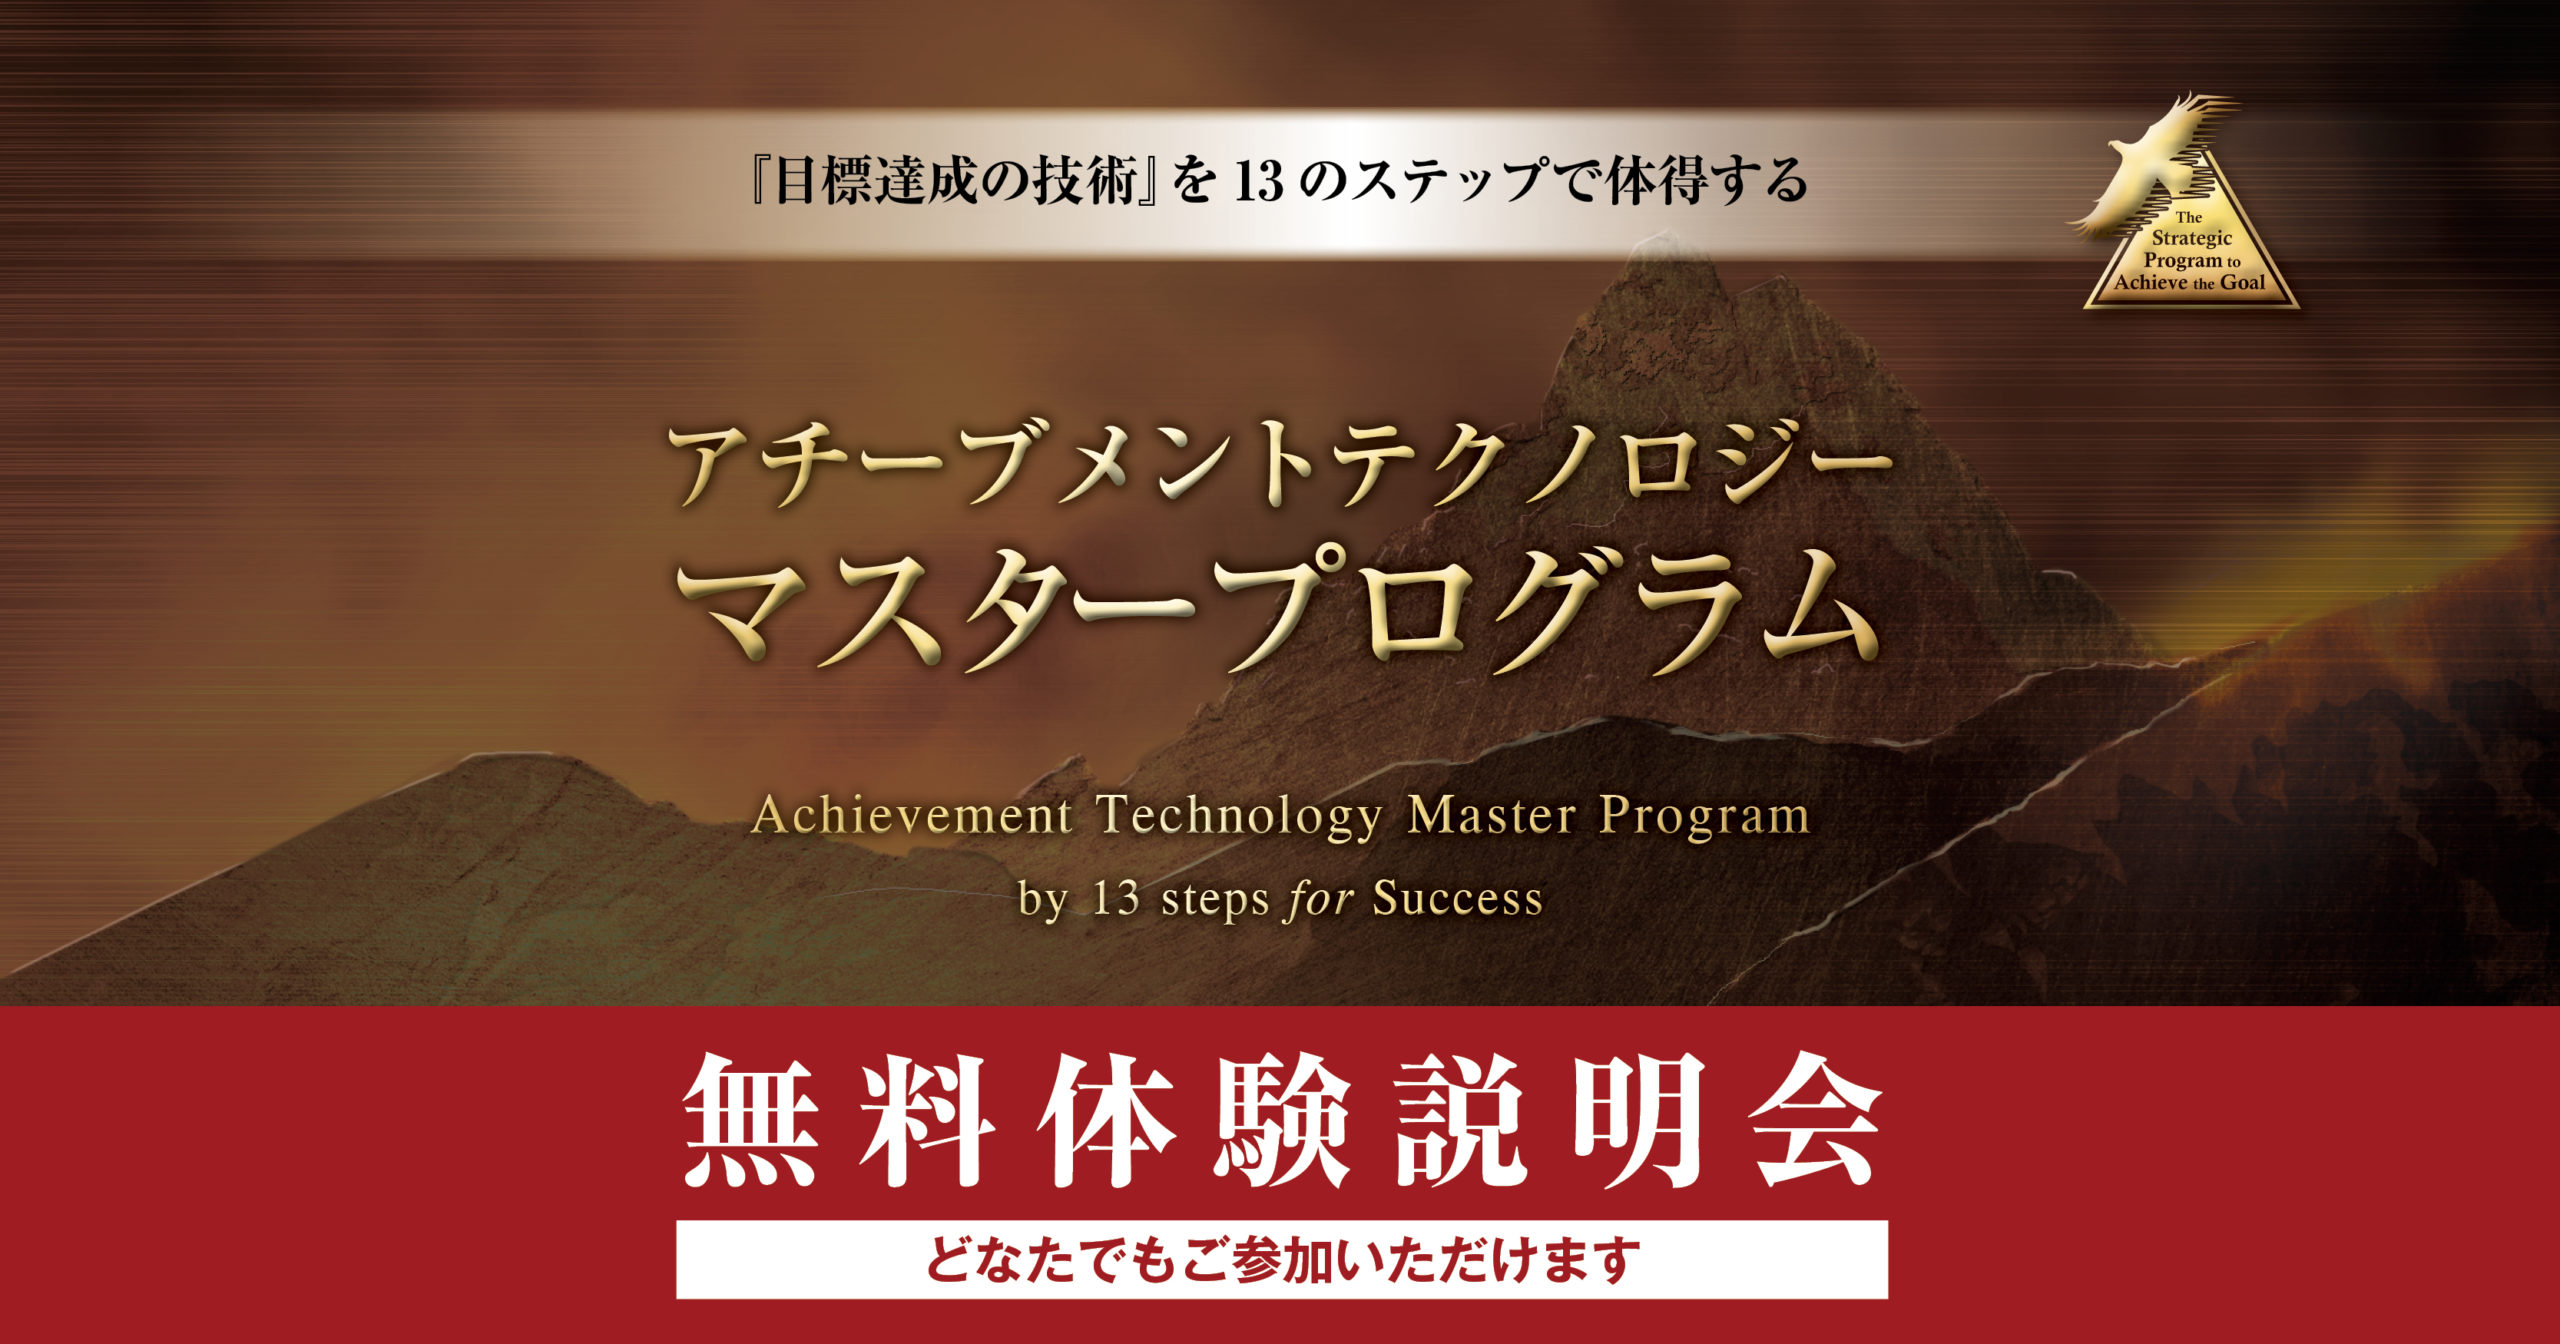 アチーブメントテクノロジーマスタープログラム無料体験説明会〜3ヶ月